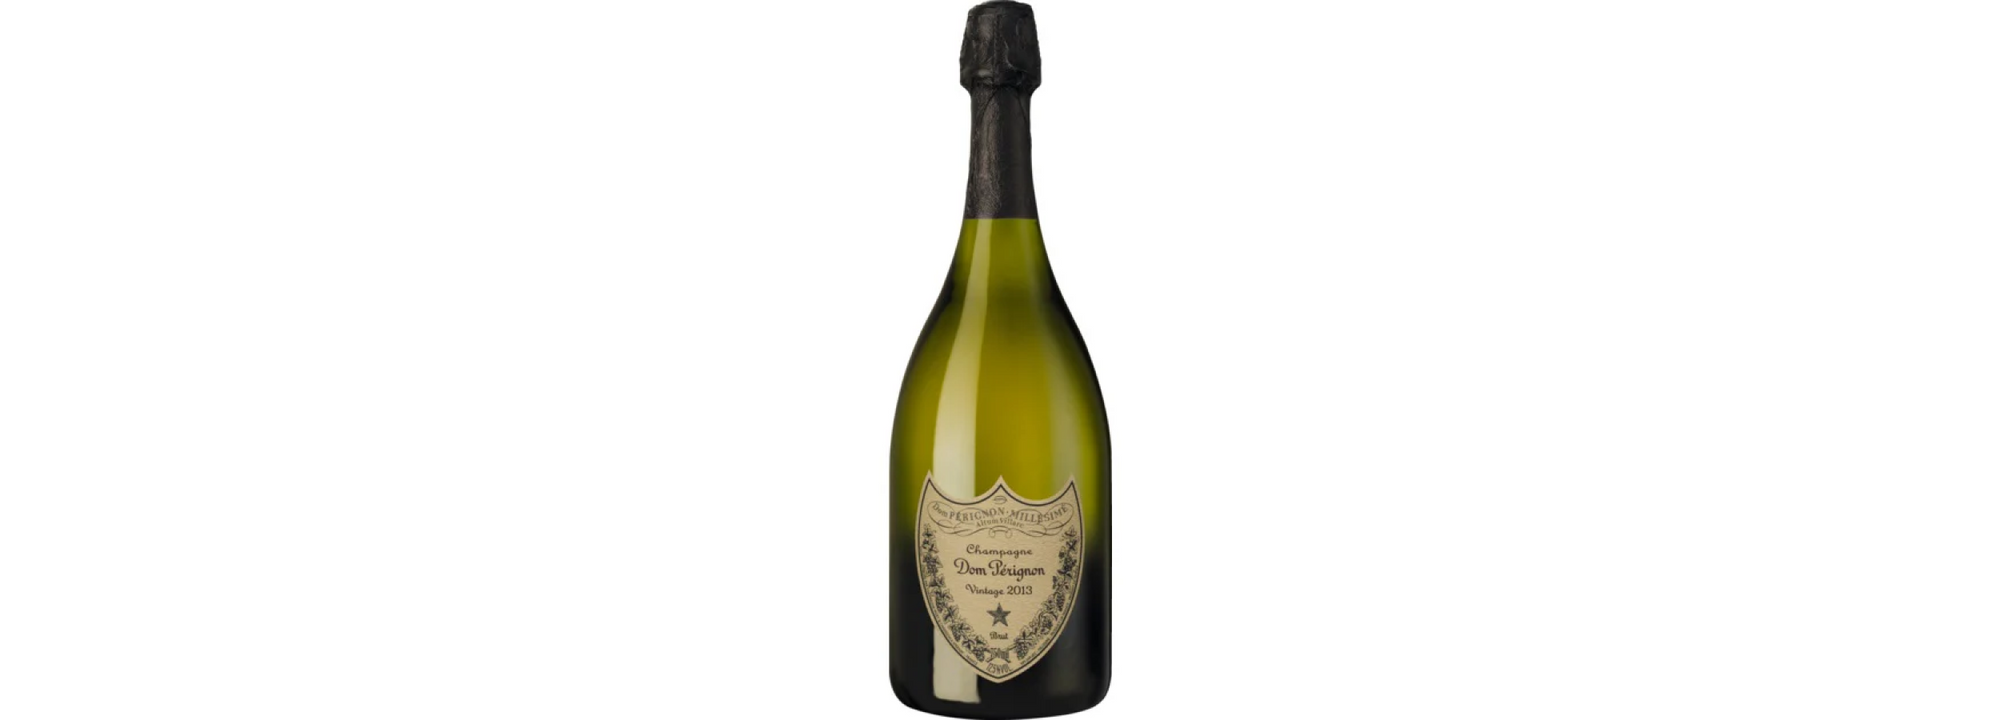 Champagne Dom Pérignon